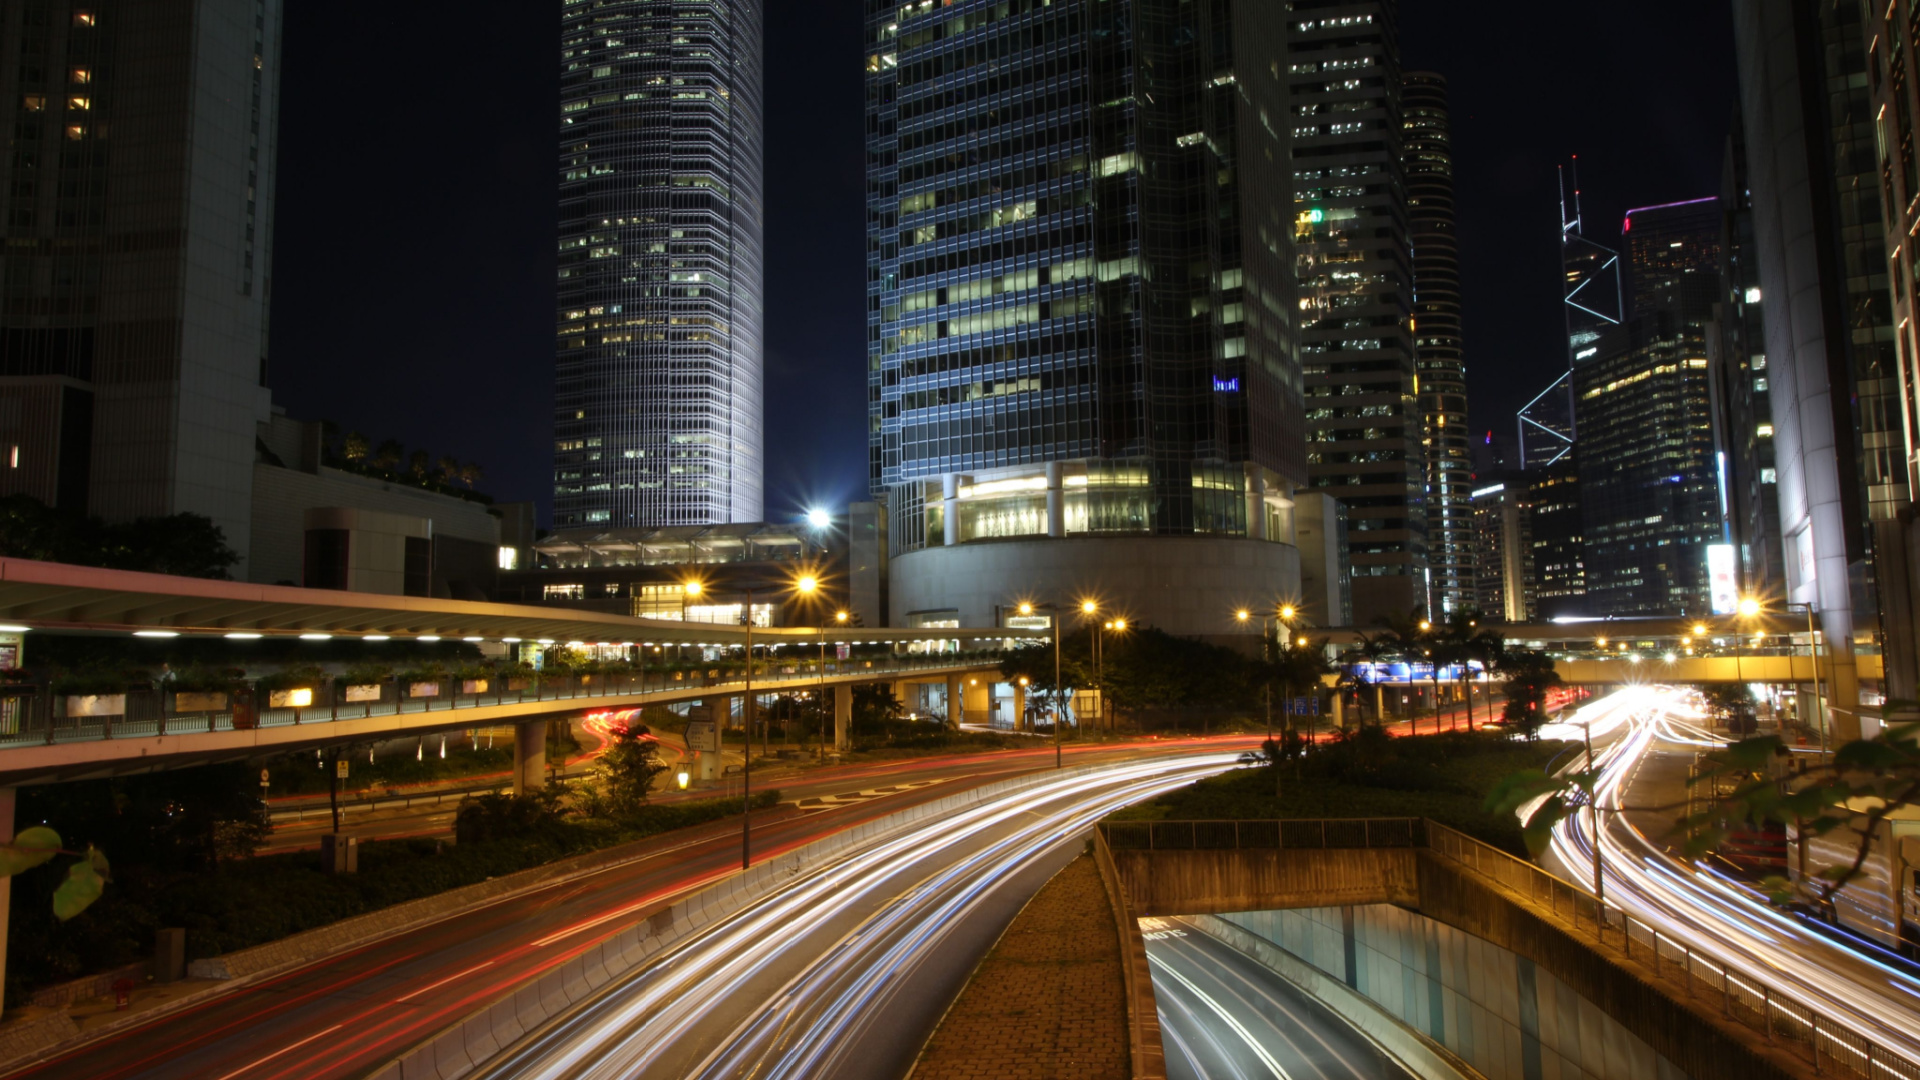 Illuminazione smart city: il ruolo dell’alluminio nella città intelligente